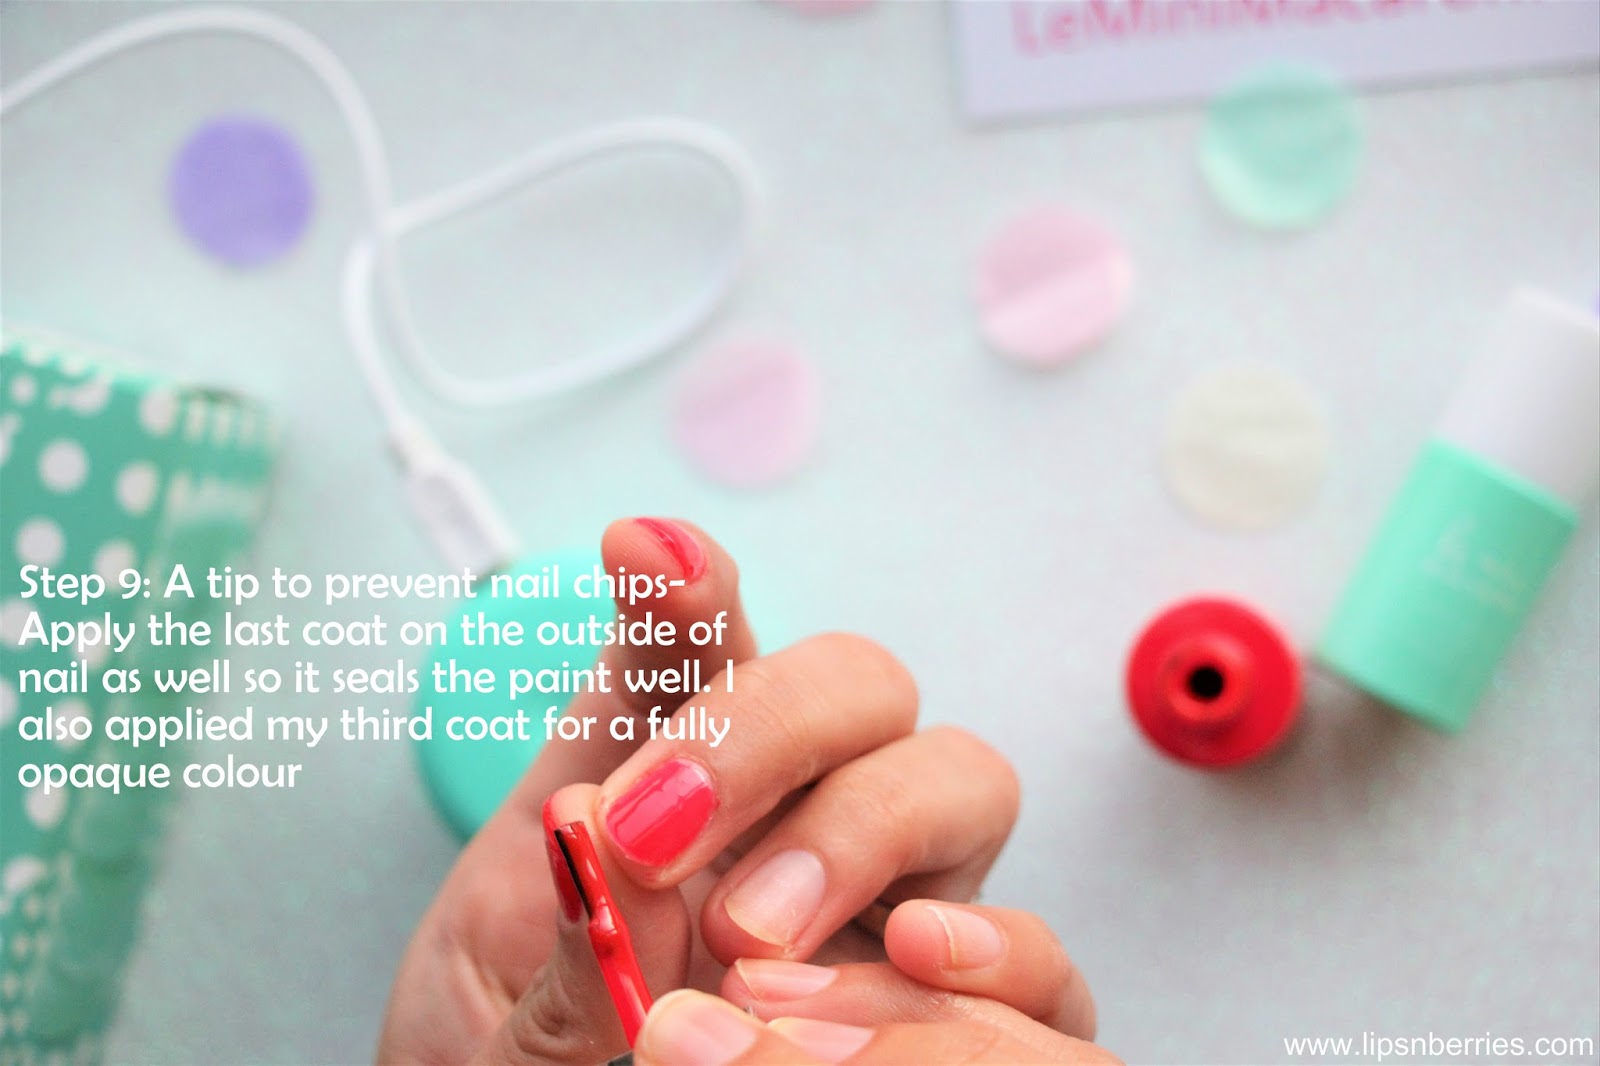 Le Mini Macaron Gel Nail Manicure Kit Review